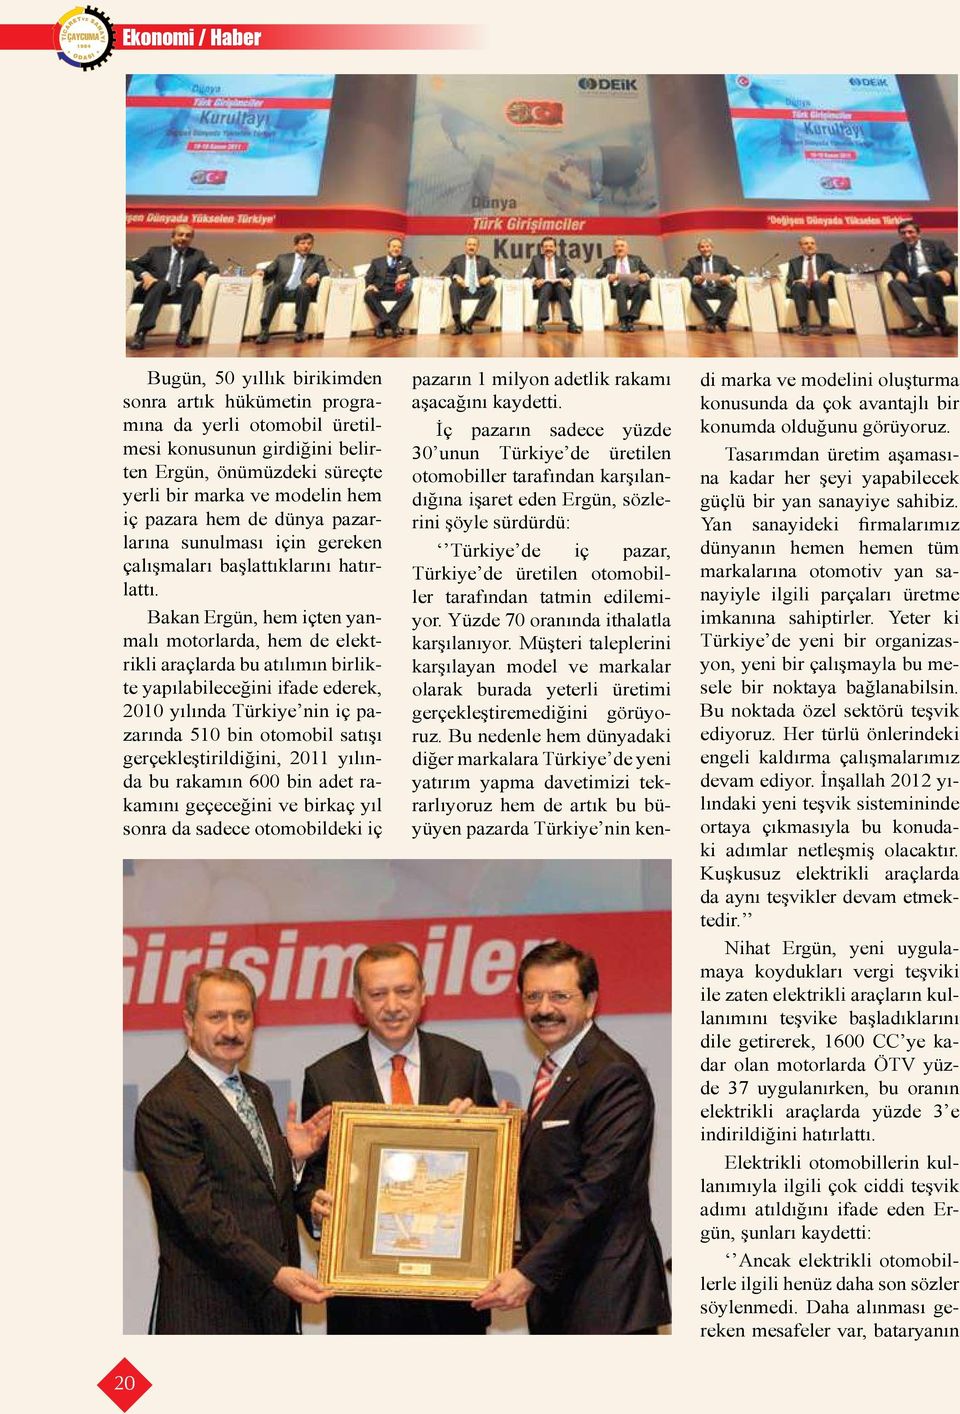 Bakan Ergün, hem içten yanmalı motorlarda, hem de elektrikli araçlarda bu atılımın birlikte yapılabileceğini ifade ederek, 2010 yılında Türkiye nin iç pazarında 510 bin otomobil satışı